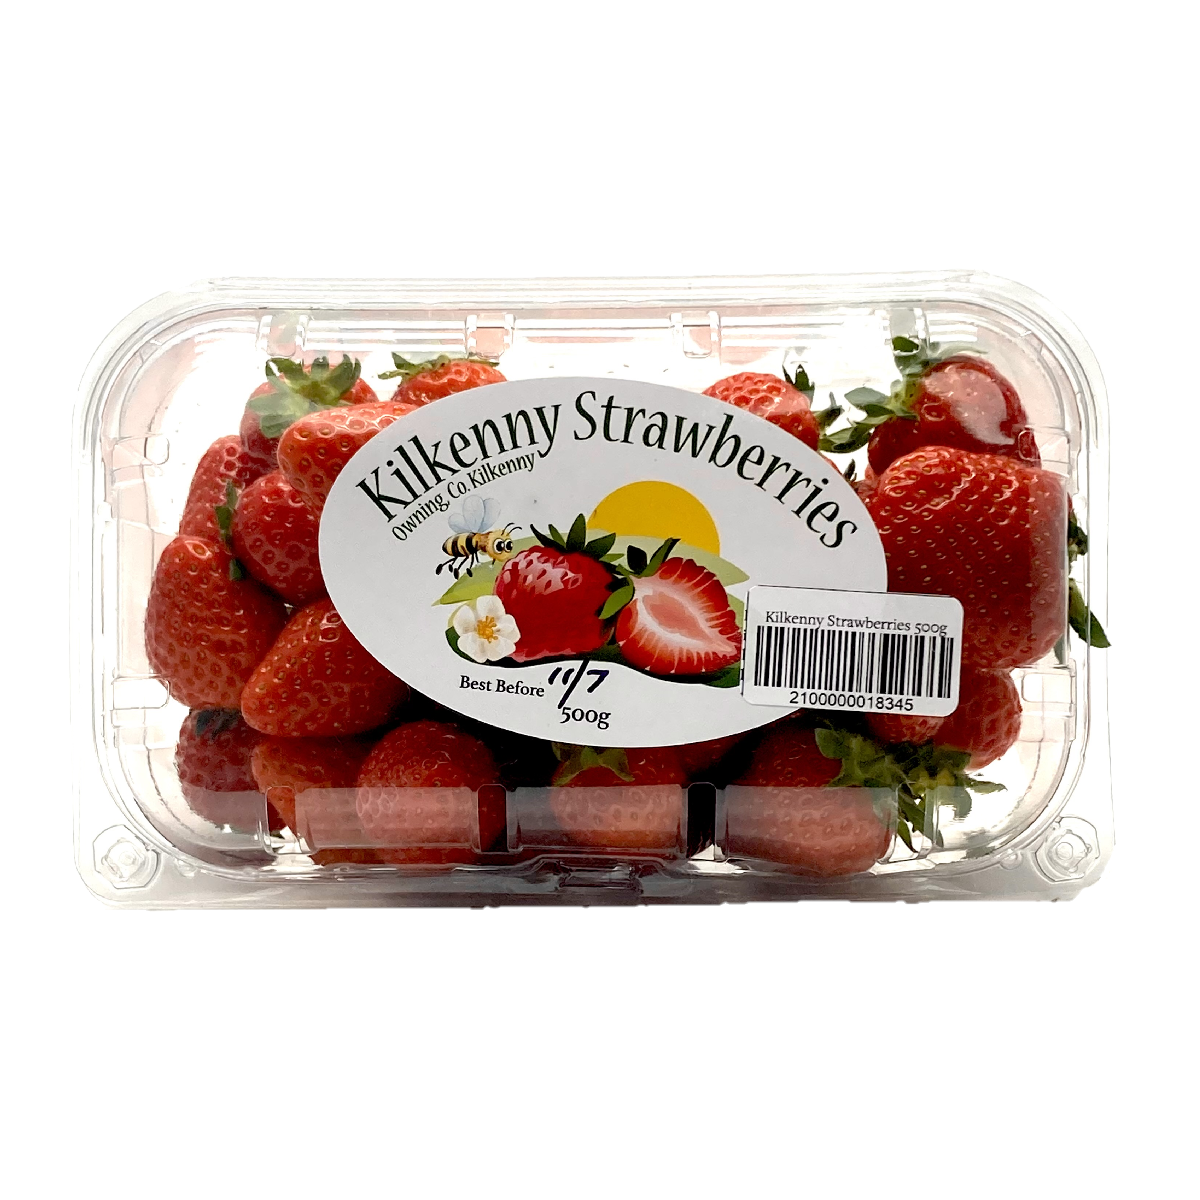 Kilkenny Strawberries 500g